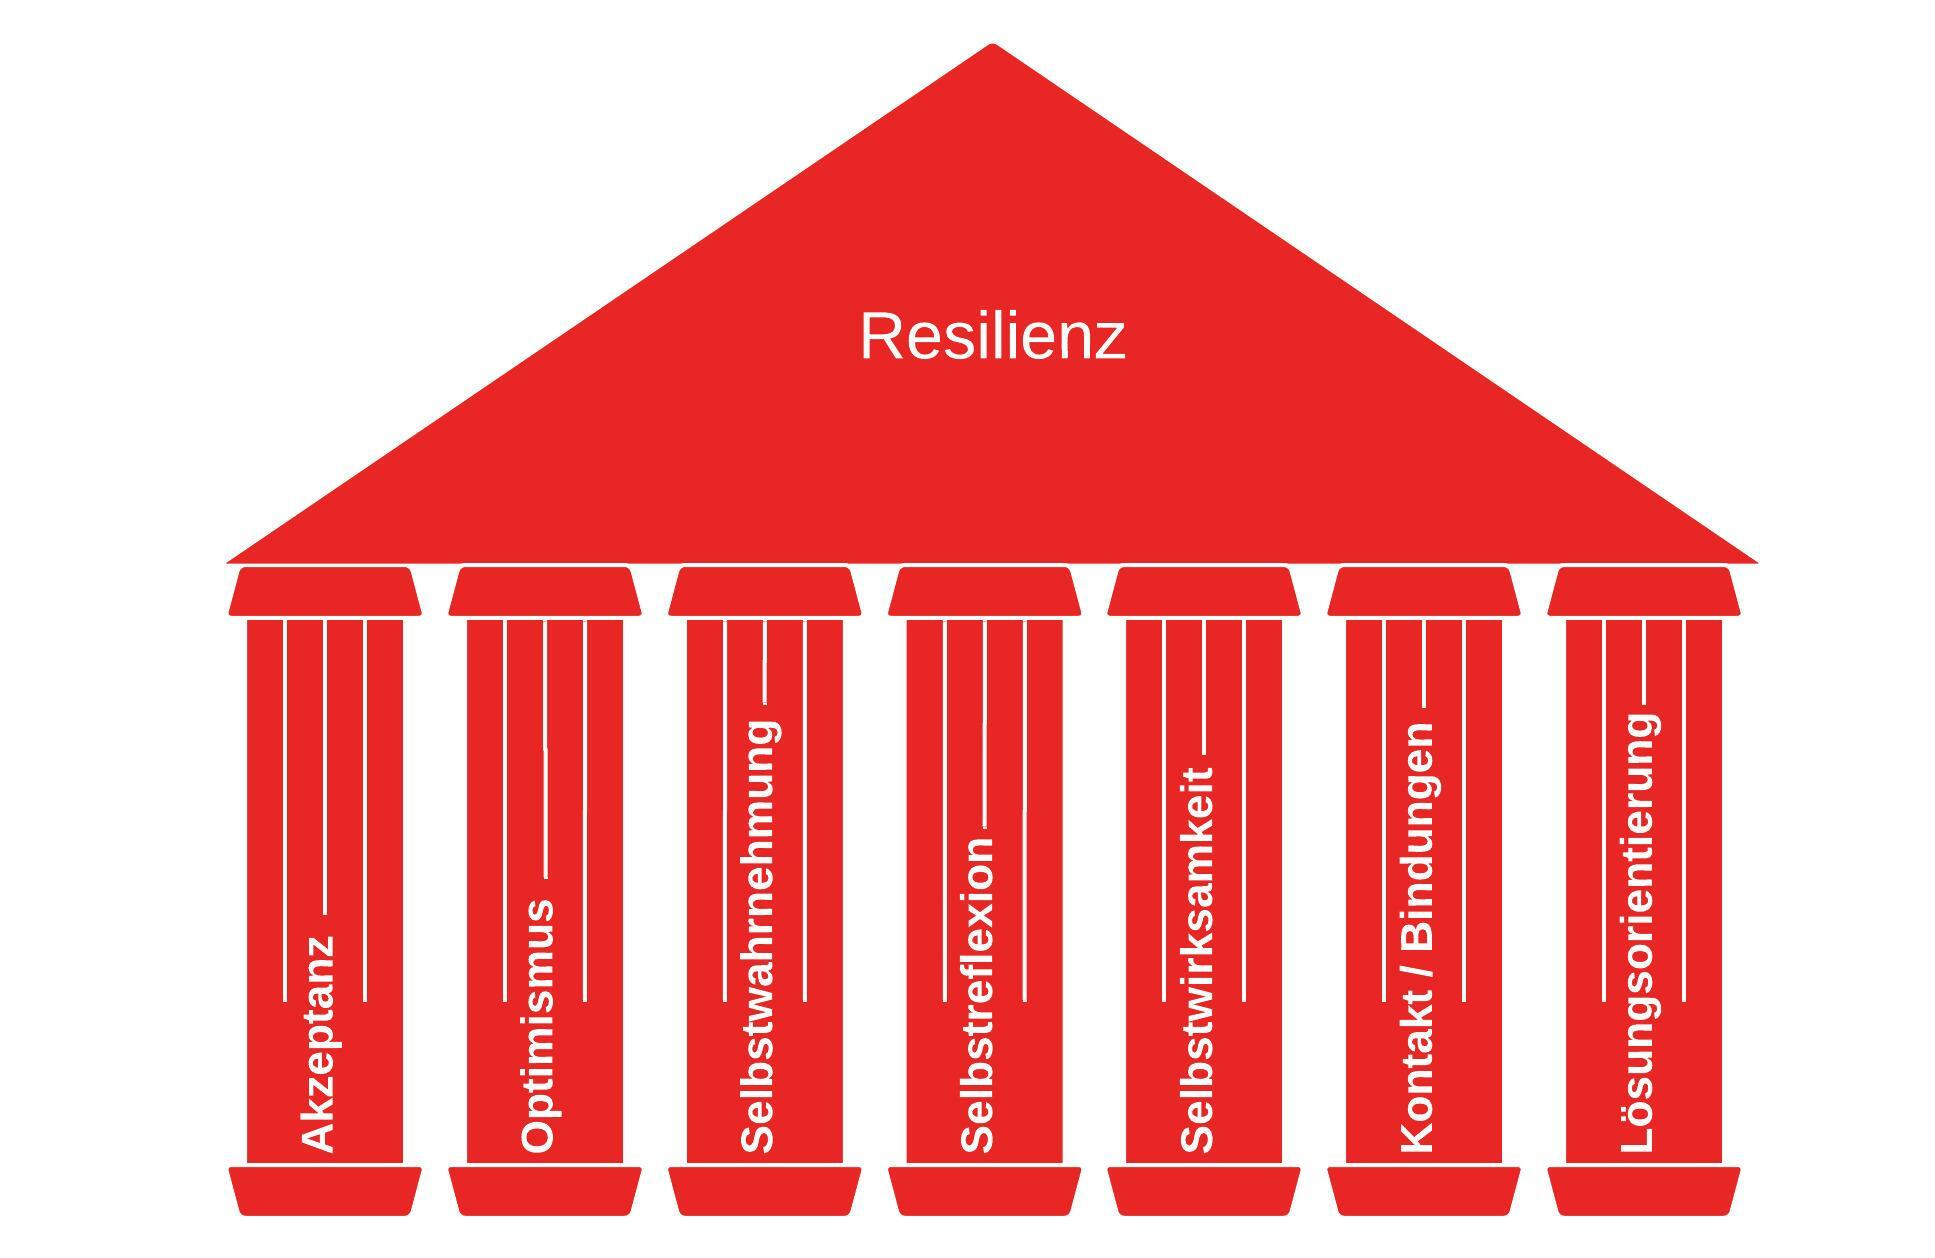 sieben-saeulen-der-resilienz-in-roter-farbe